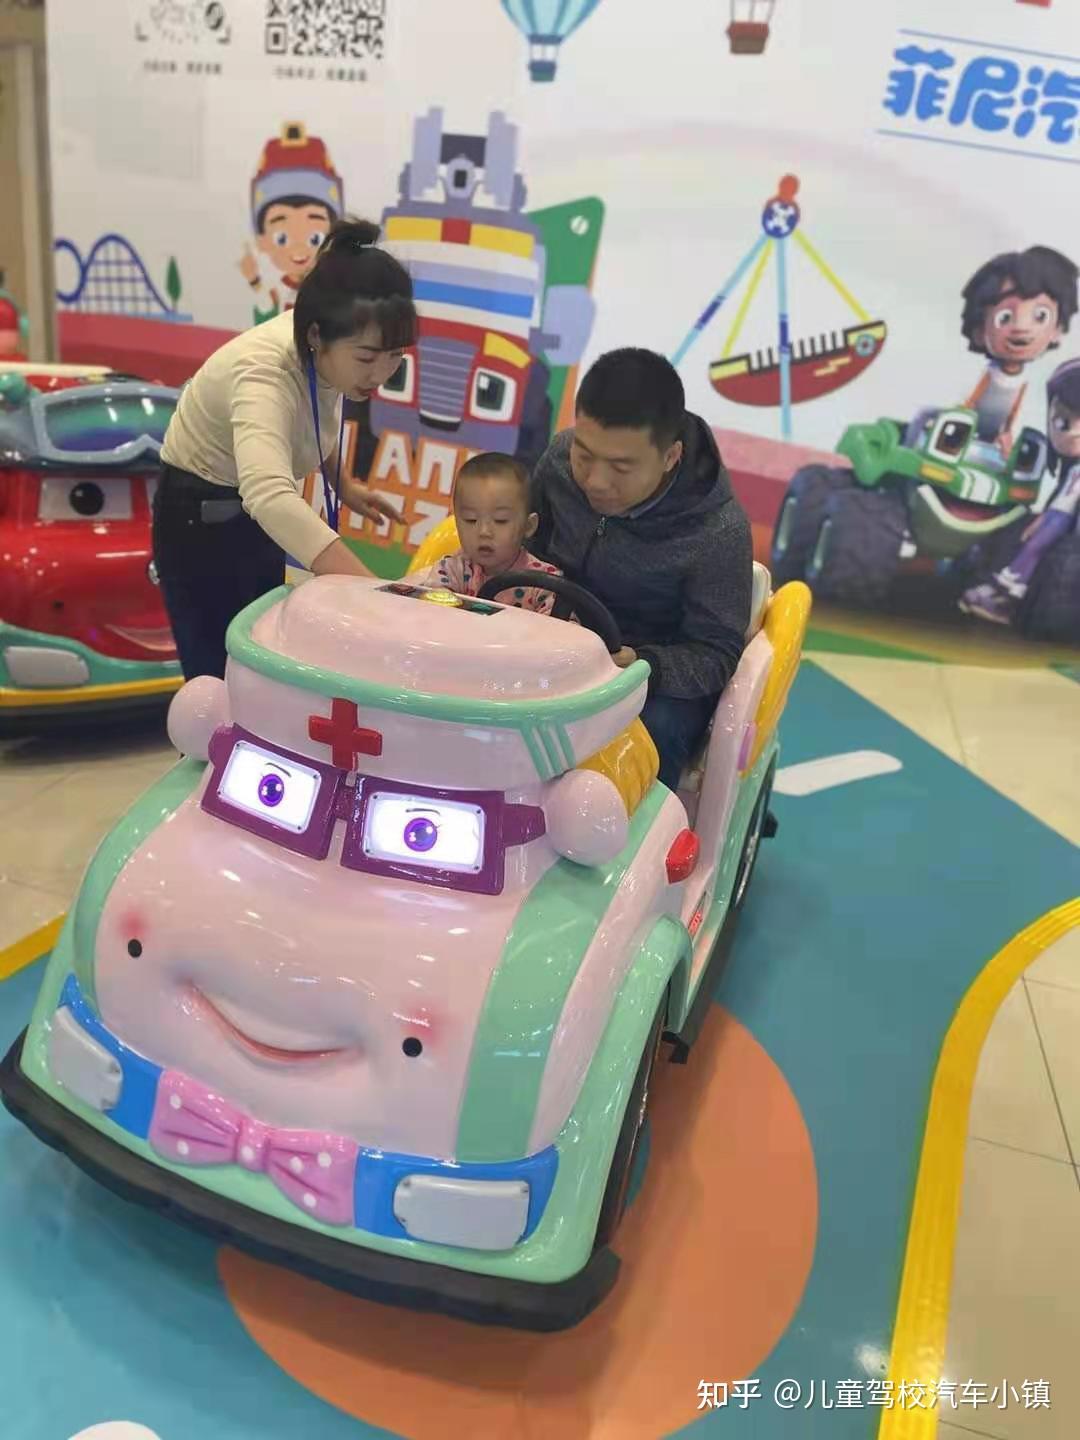 汽车交通小镇儿童模拟驾校亲子乐园自身体验篇 - 知乎